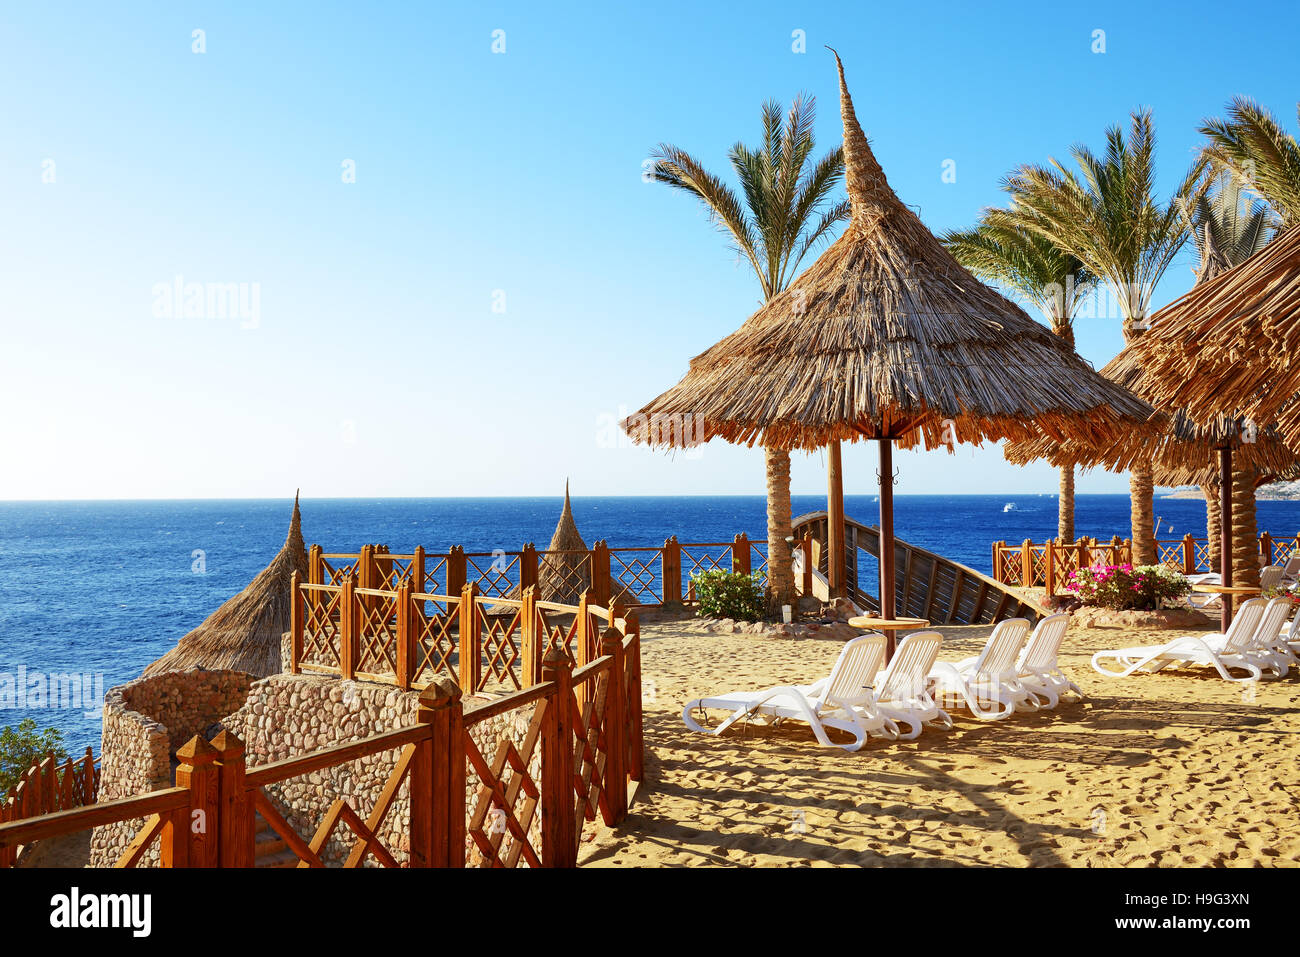 En el hotel de lujo de playa, Sharm el Sheikh, Egipto Foto de stock